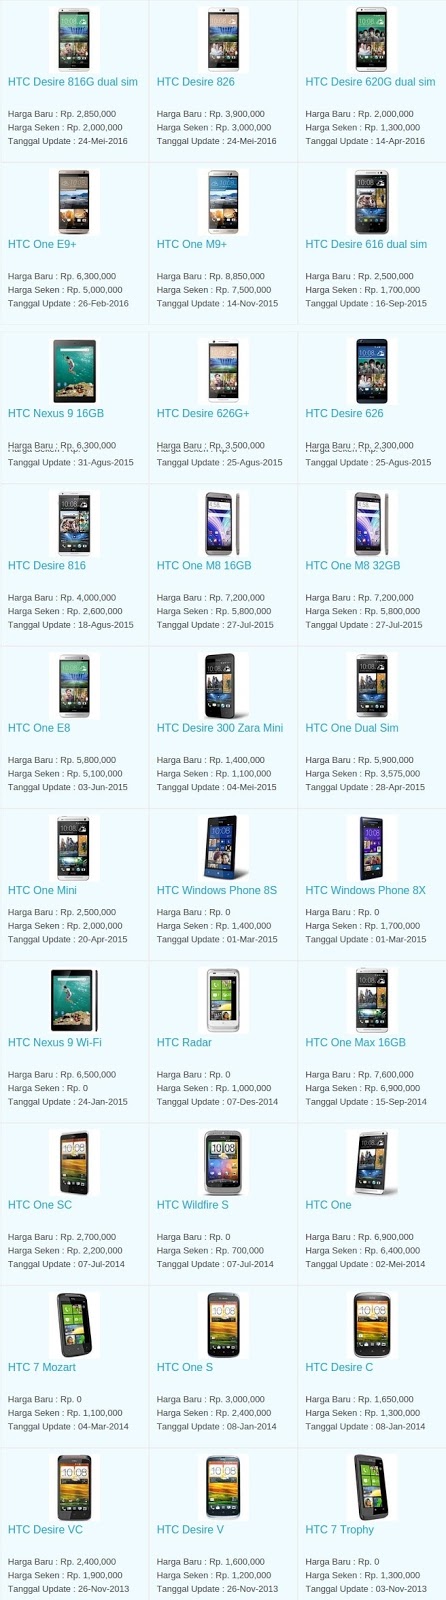 Daftar Harga Hp Terbaru HTC Juni 2016